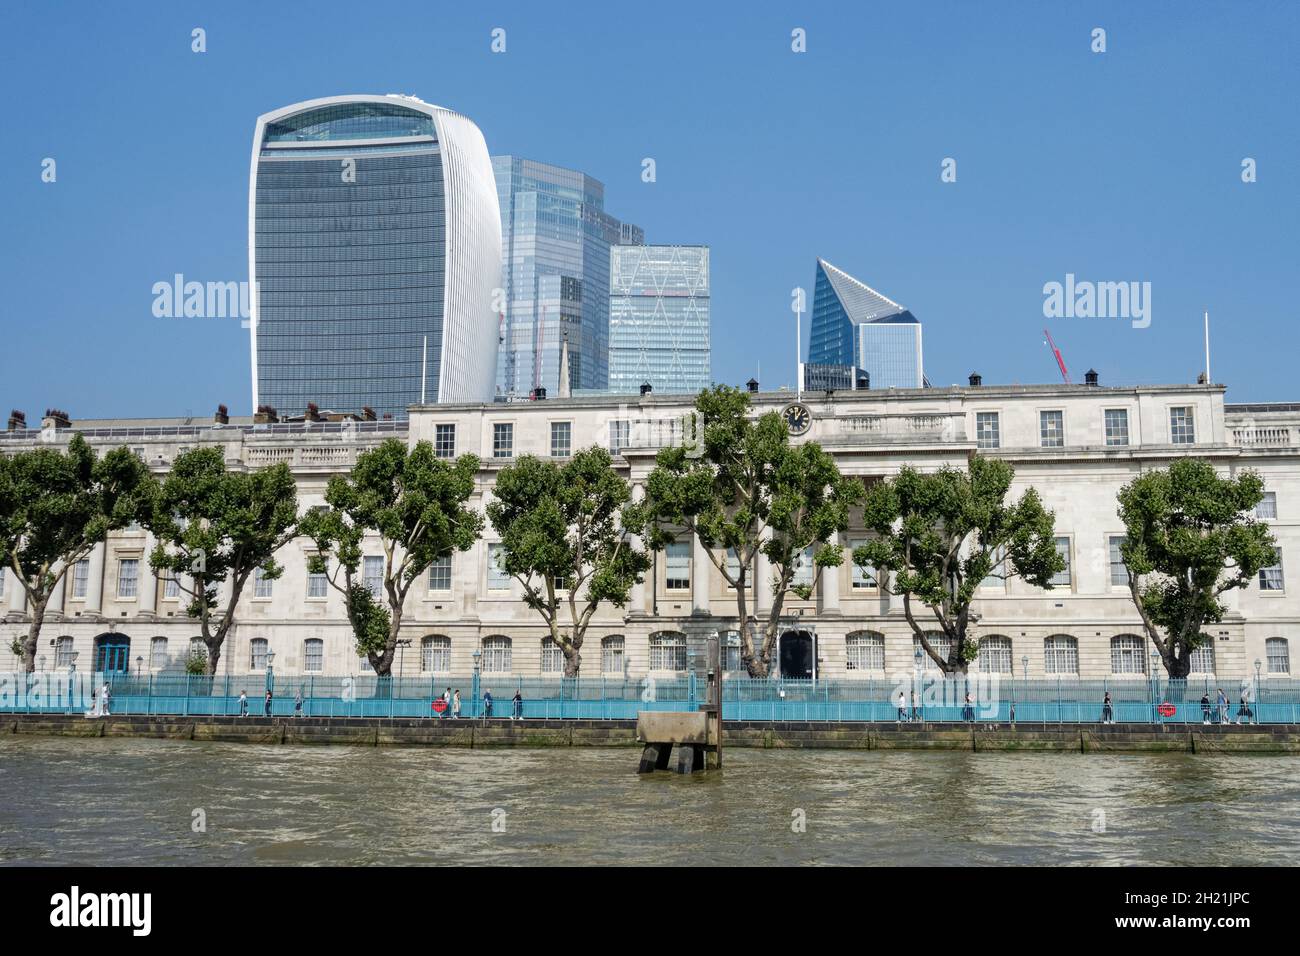 Custom House, HM Revenue & Customs Office con grattacieli nella città di Londra visto dal fiume Tamigi, Inghilterra Regno Unito Foto Stock